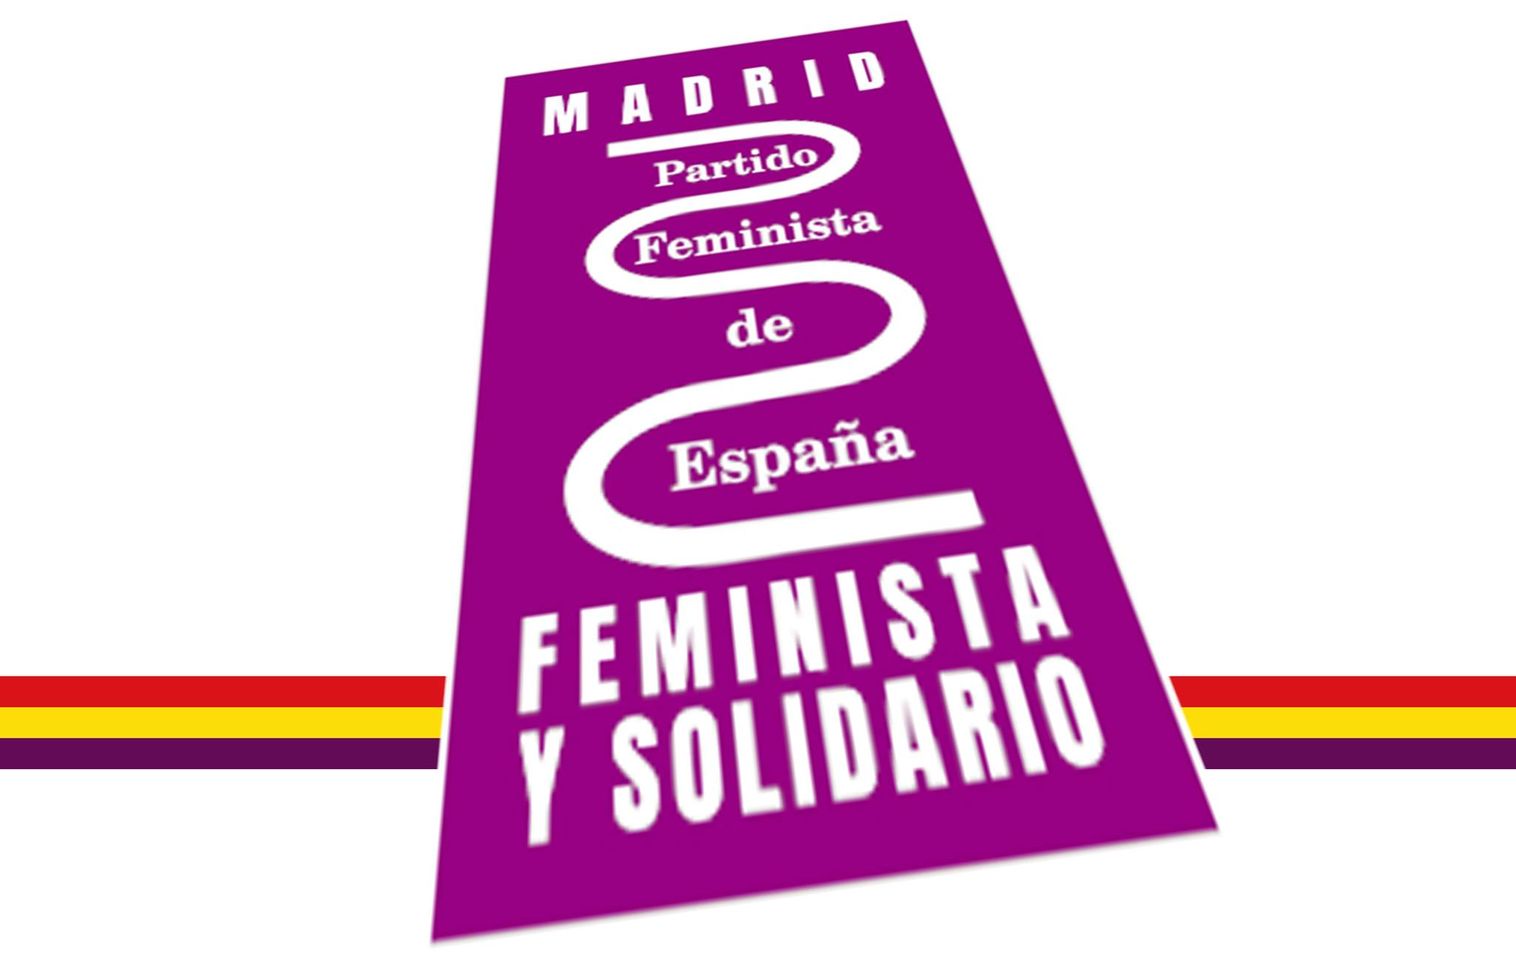 Partido Feminista